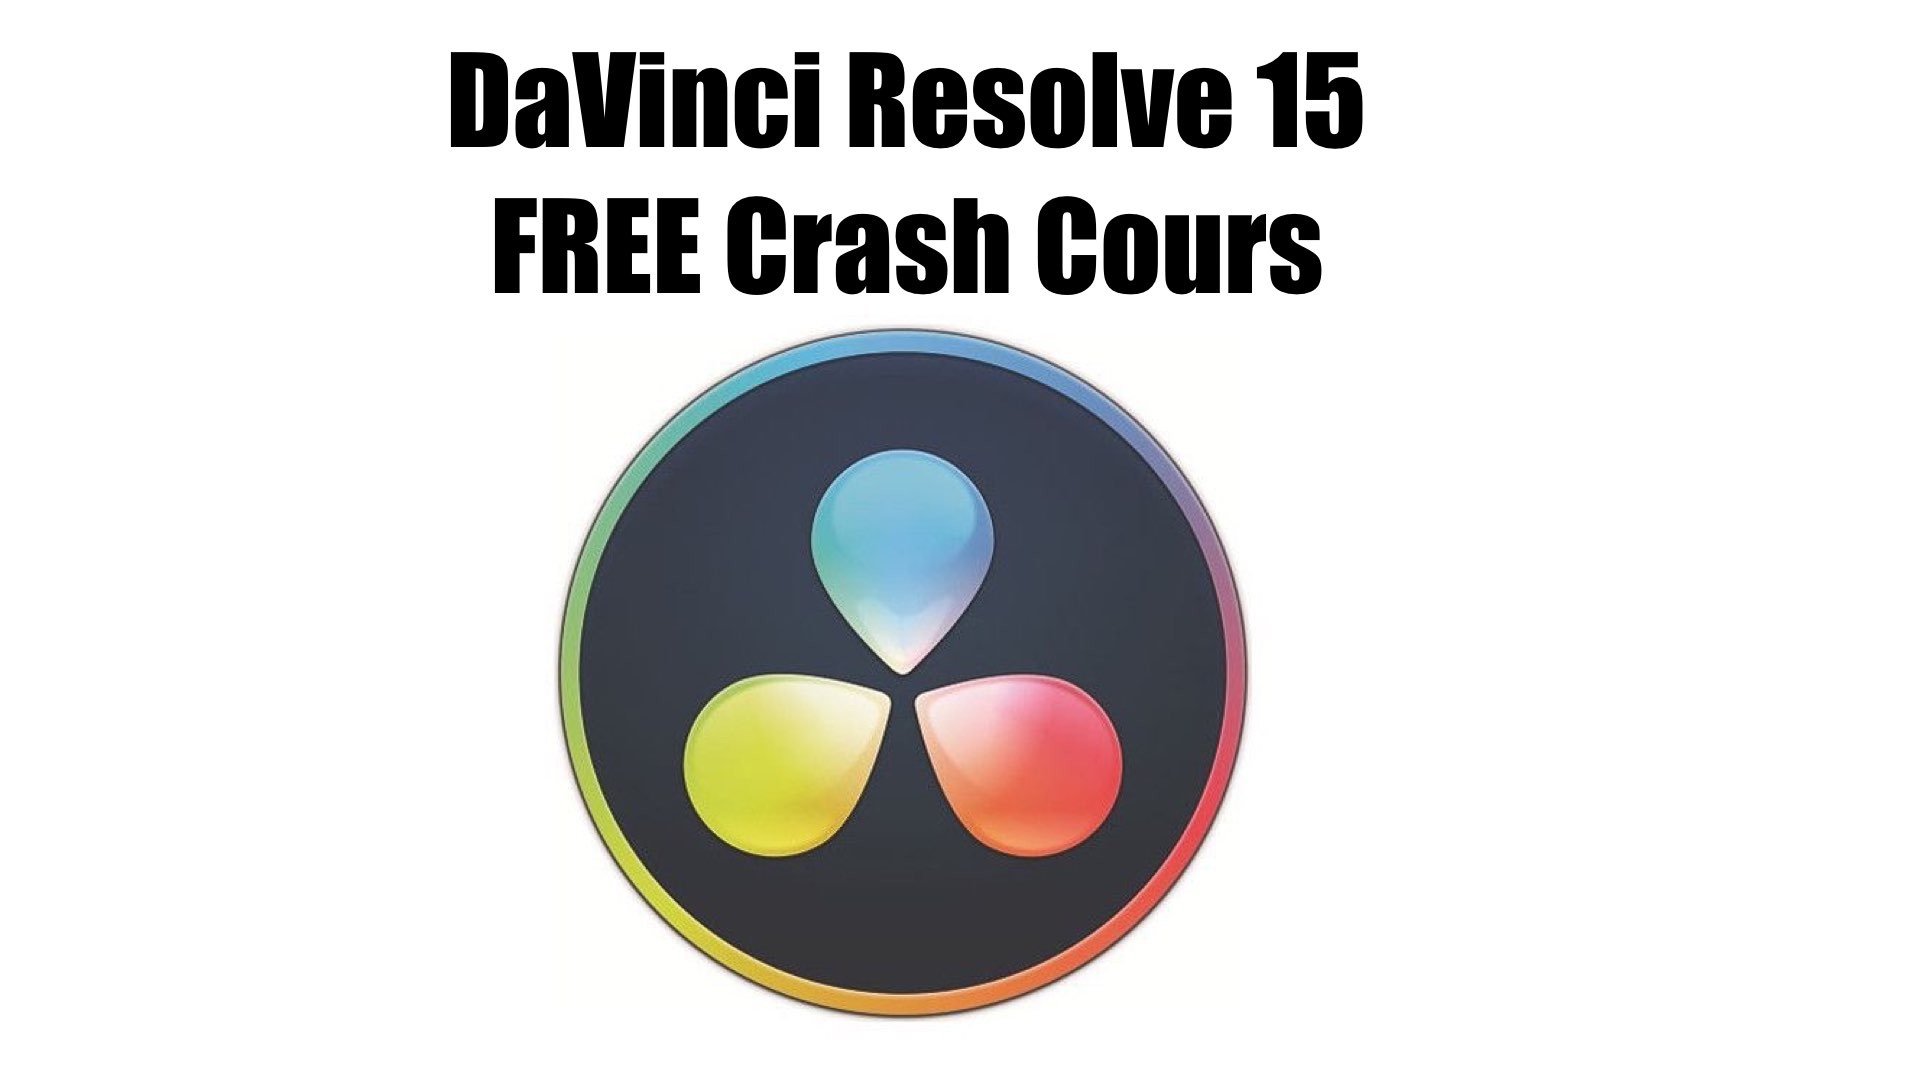 davinci resolve 15 free